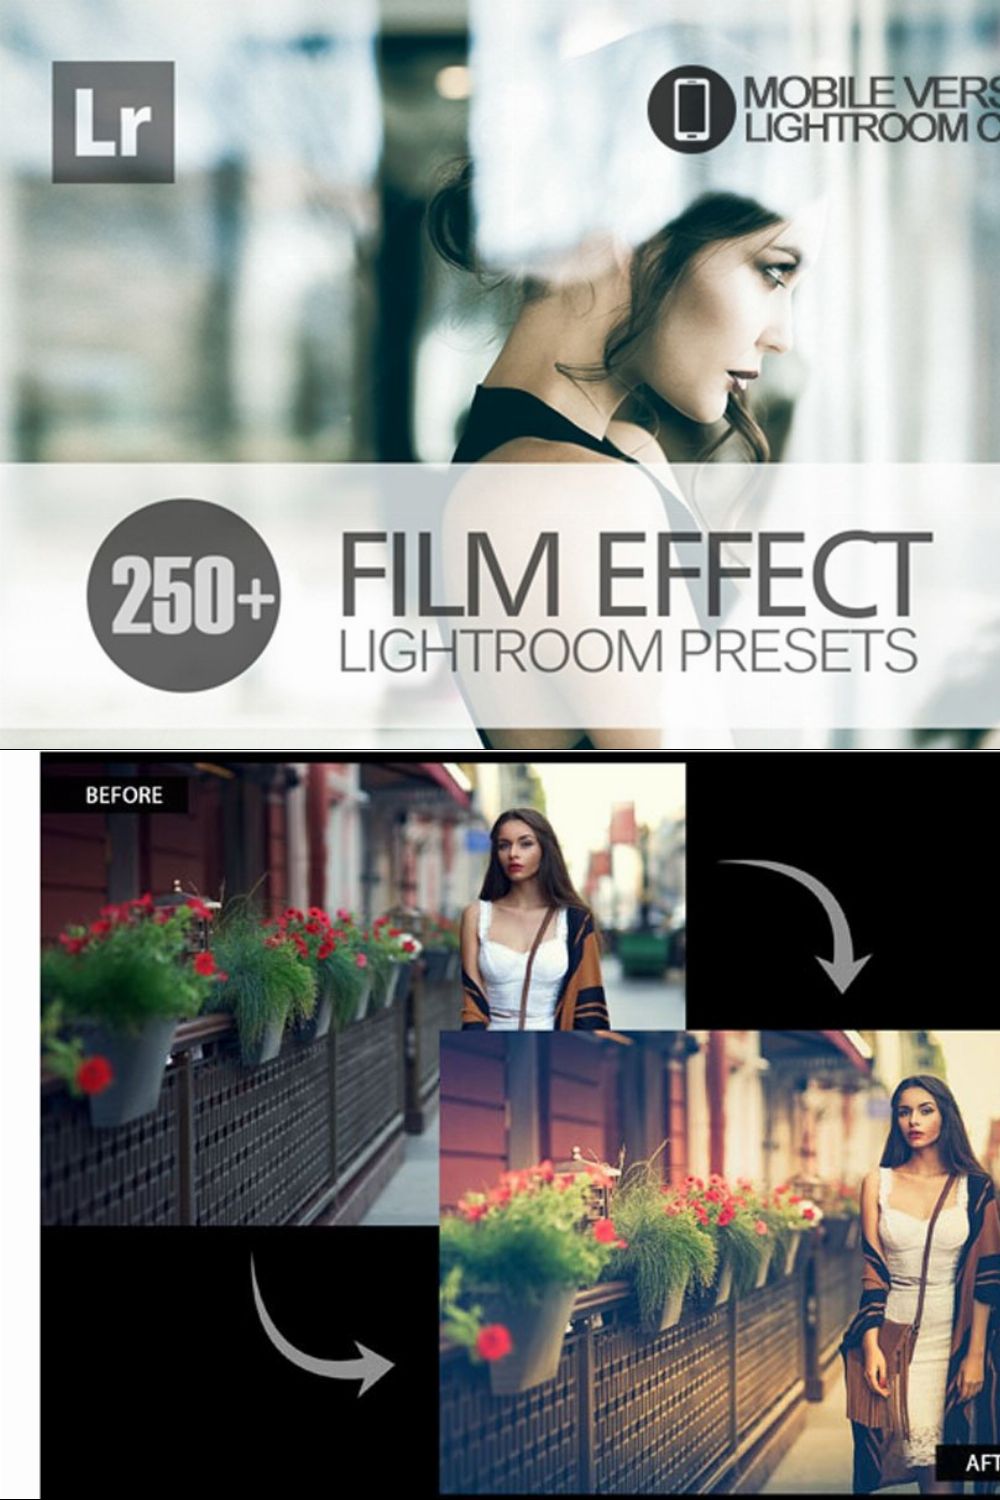 Film Effect Lightroom Mobile Presets pinterest preview image.